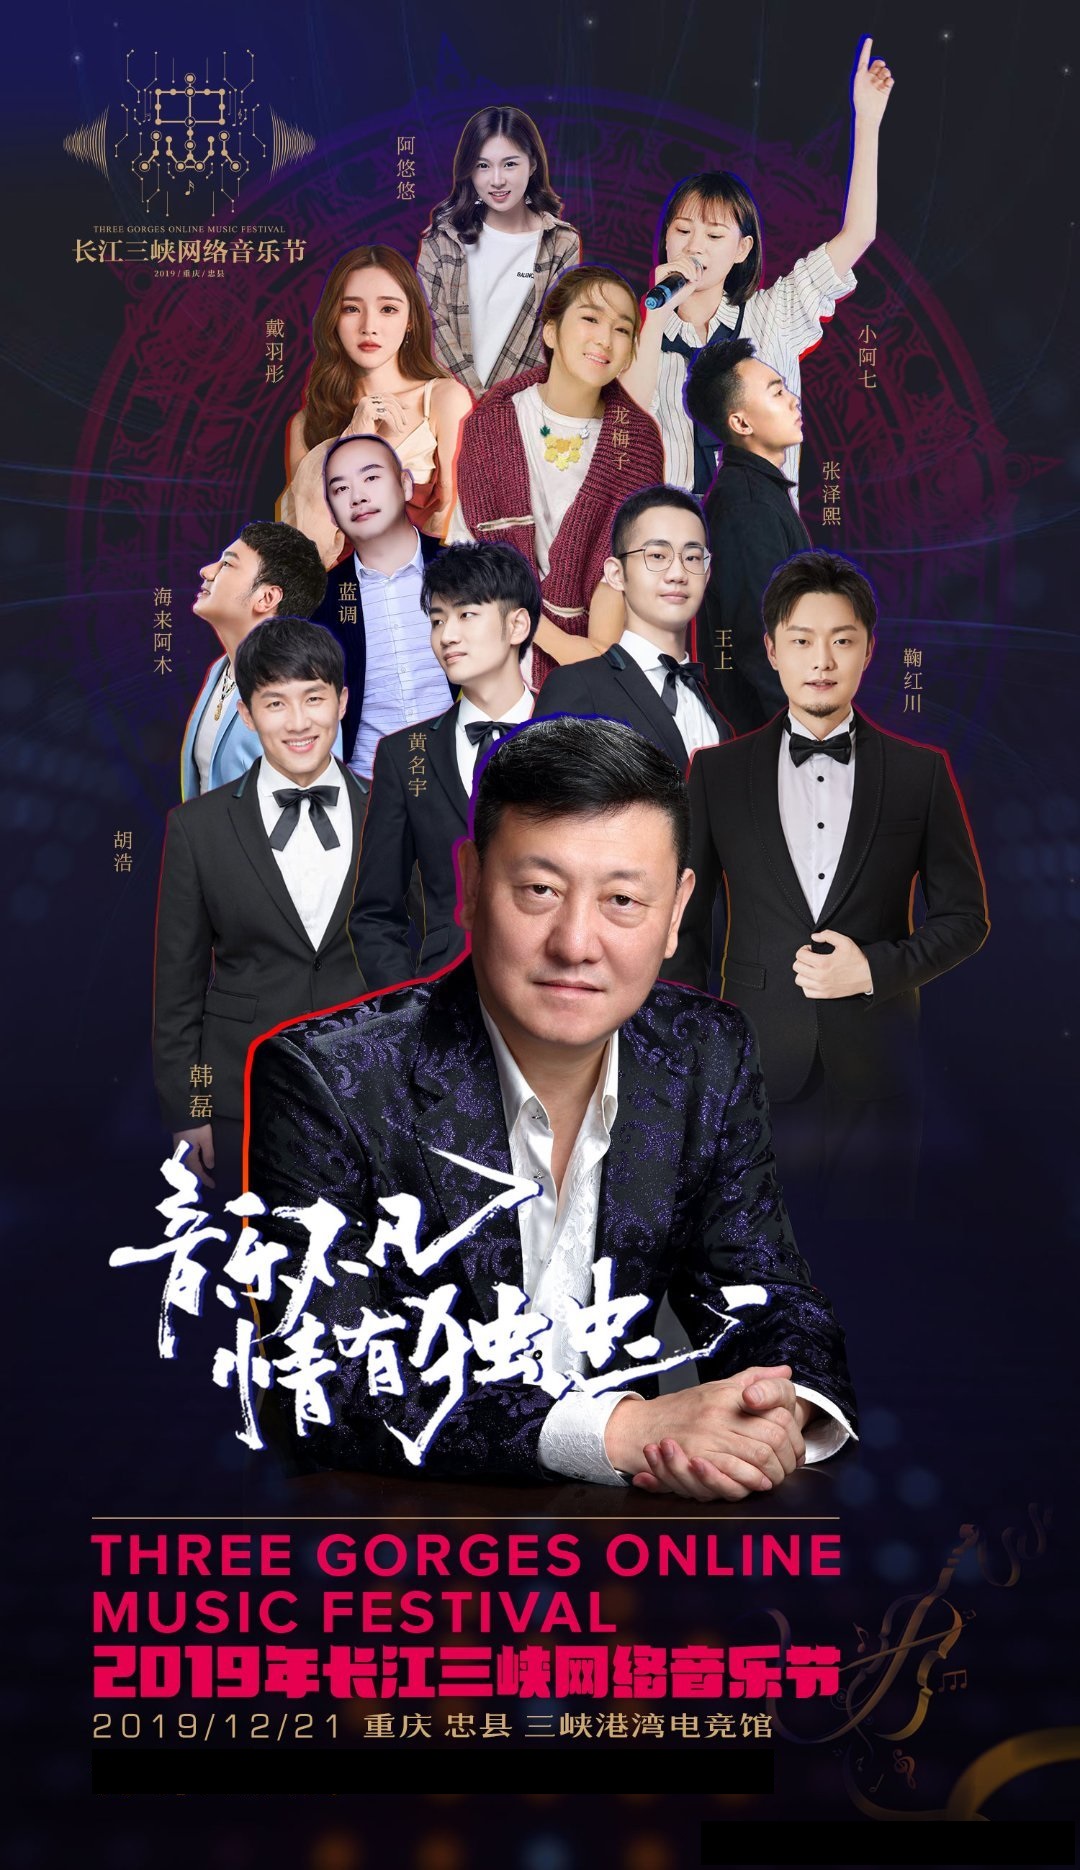 2019重庆忠县网络音乐节